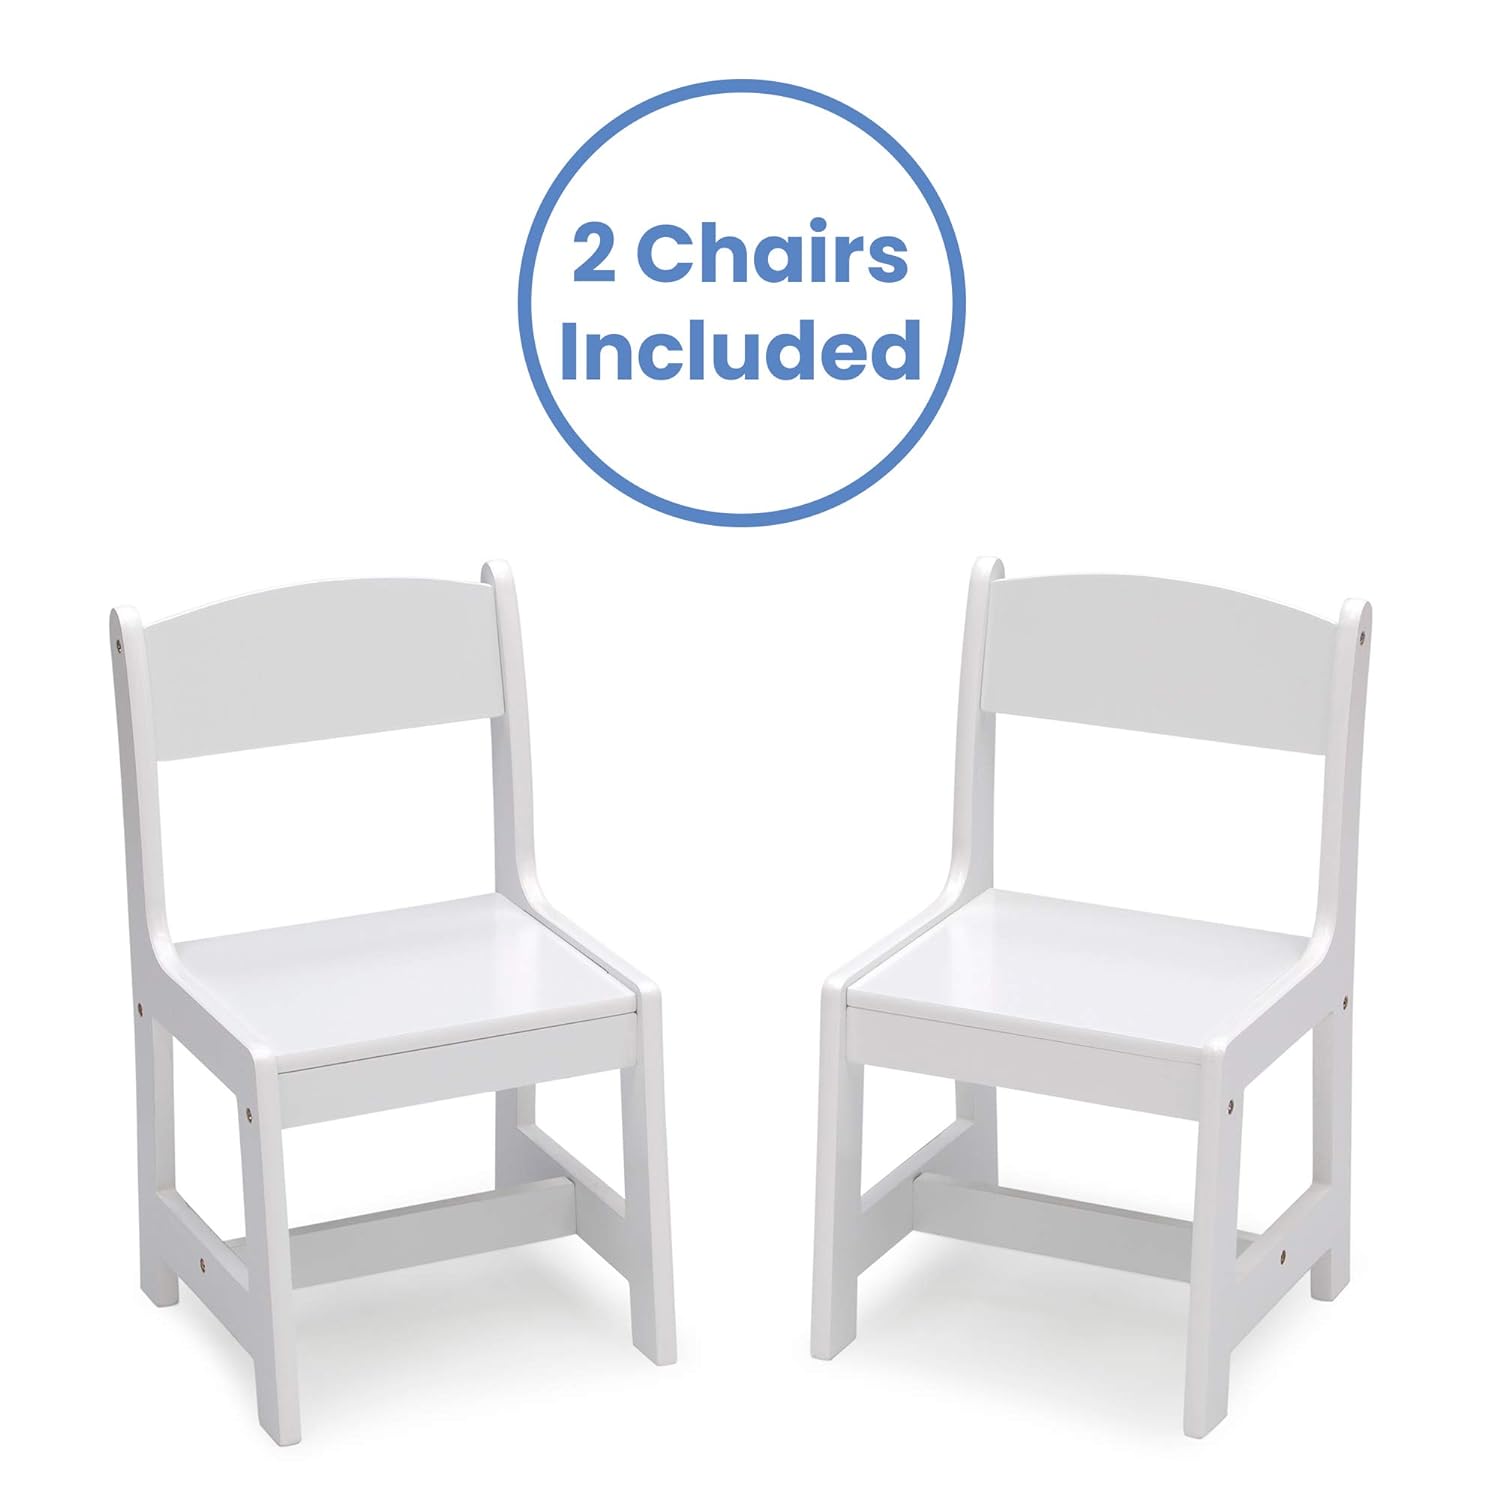 MySize Juego de mesa y silla de madera para niños (2 sillas incluidas), ideal